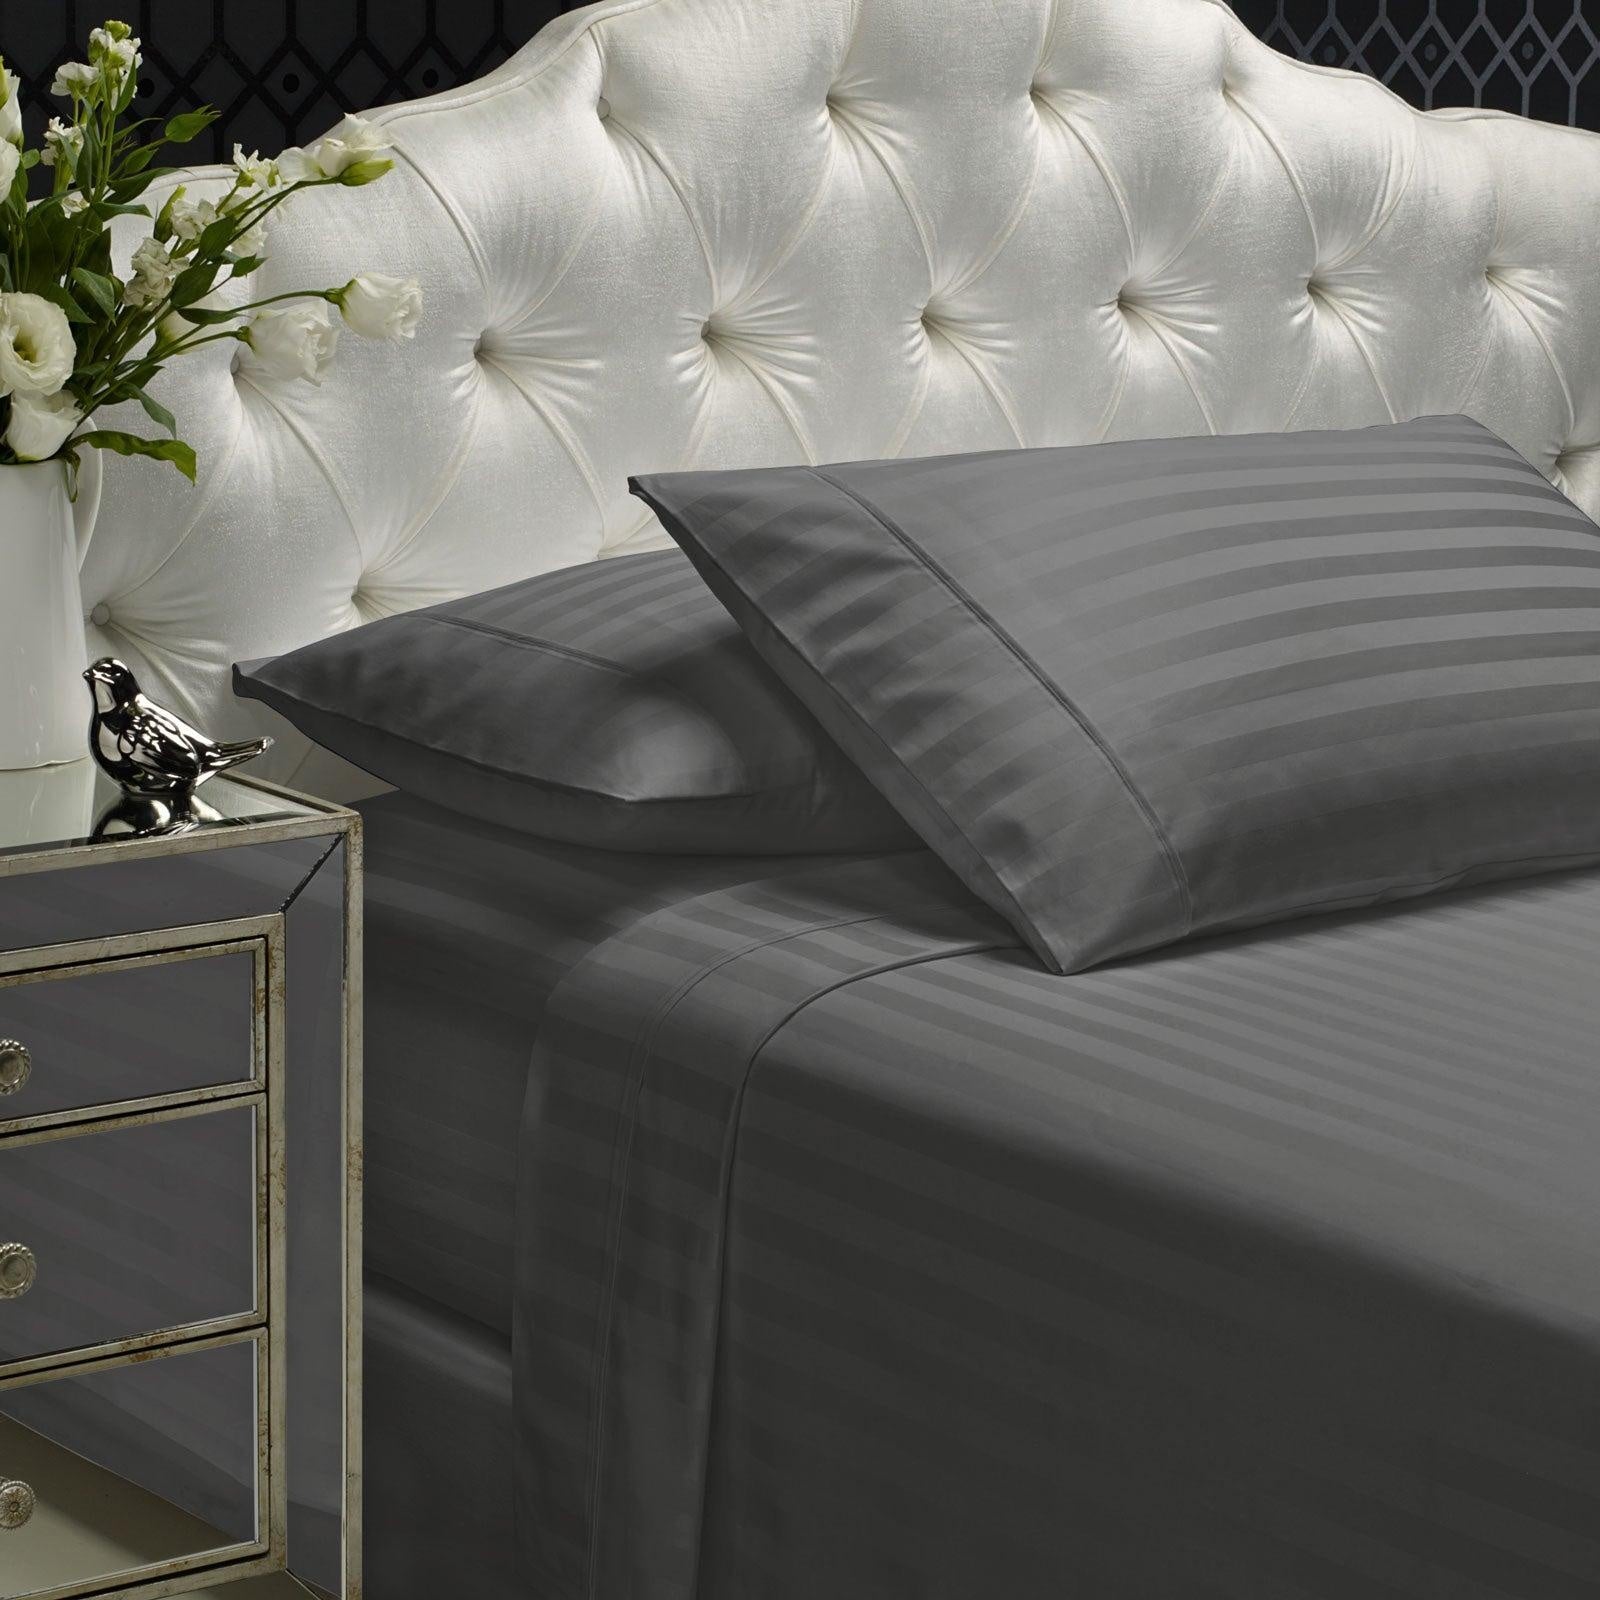 Royal Comfort 1200TC Sheet Set Damask Cotton Blend Ultra Soft Sateen Bedding Charcoal Grey Queen Deals499